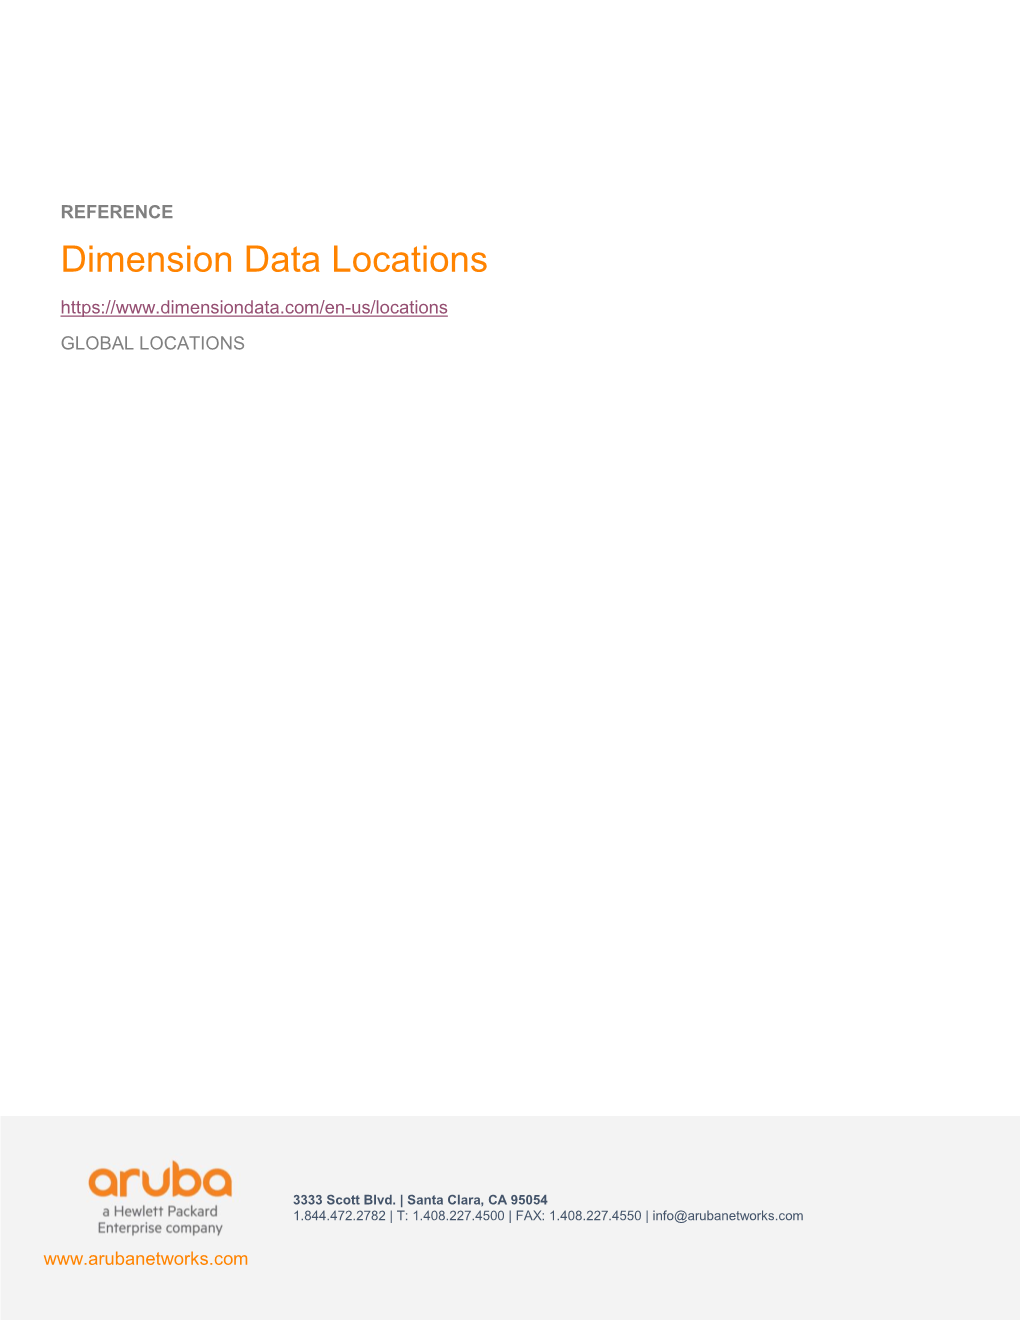 Dimension Data Locations